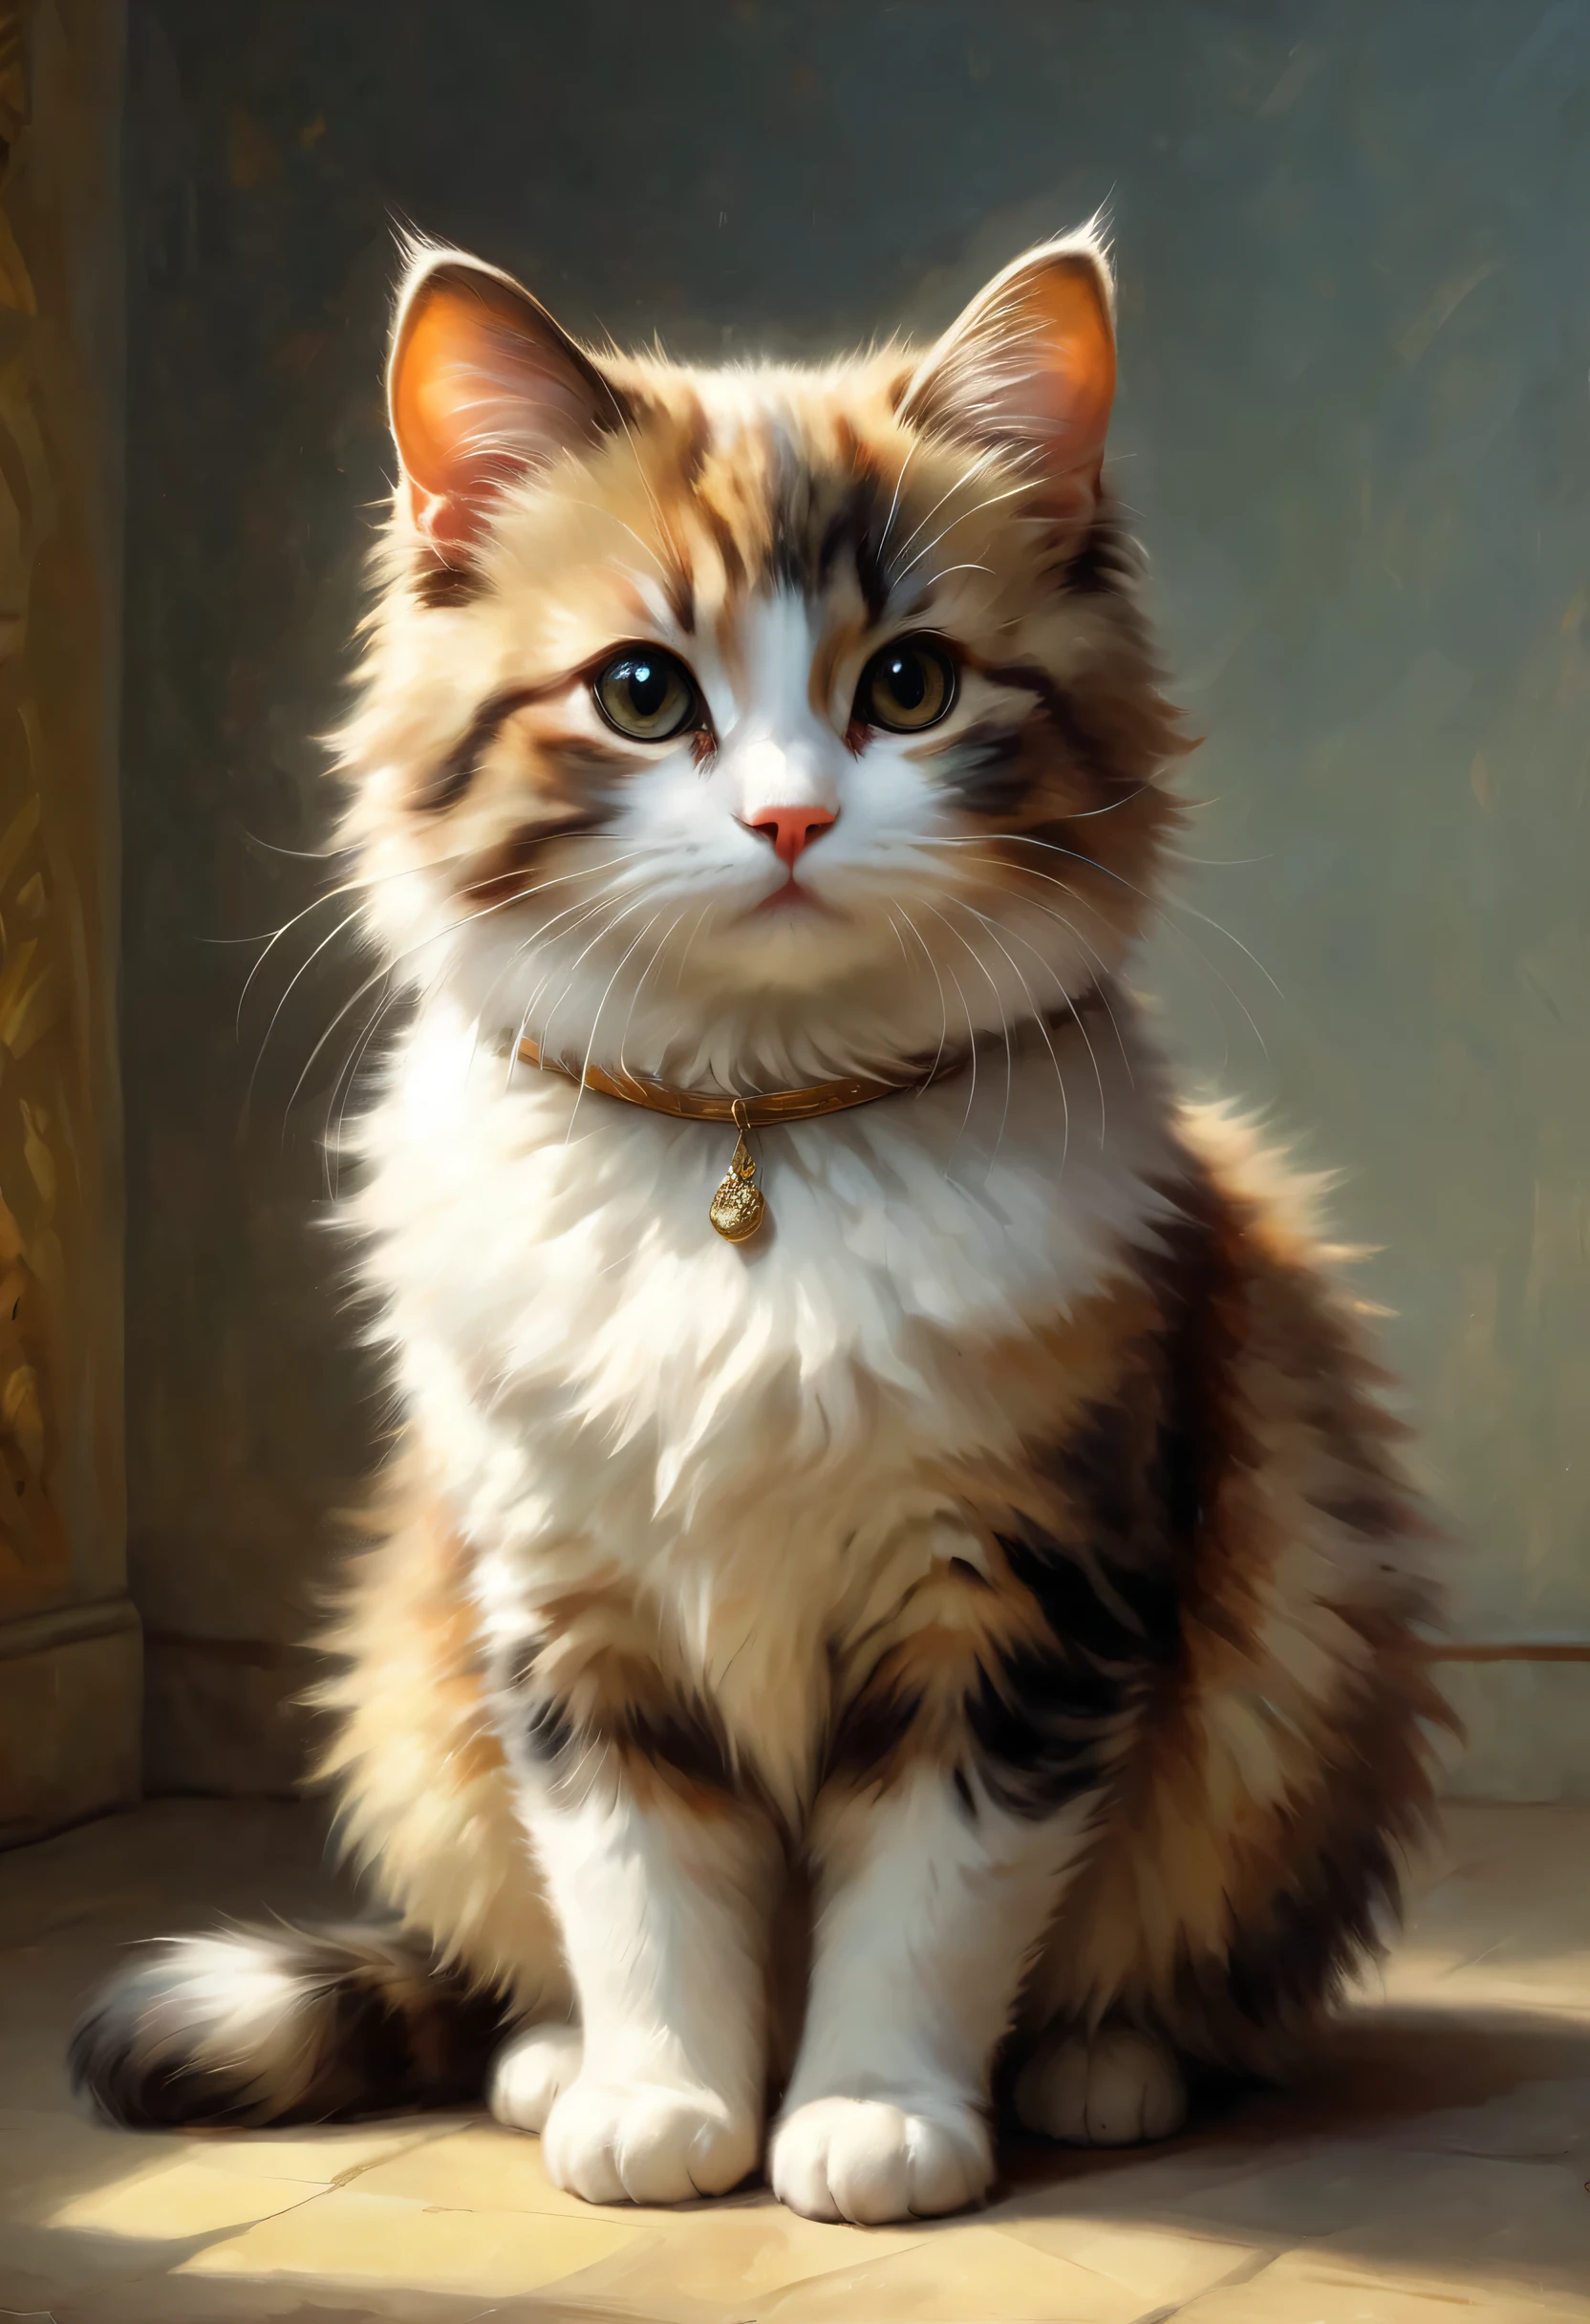 かわいいマンチカン猫が視聴者に挨拶, ピエール＝オーギュスト・ルノワールとジェレミー・マンによるアート, (視点角度:1.2), 現実的, レイトレーシング, 美しい照明,傑作